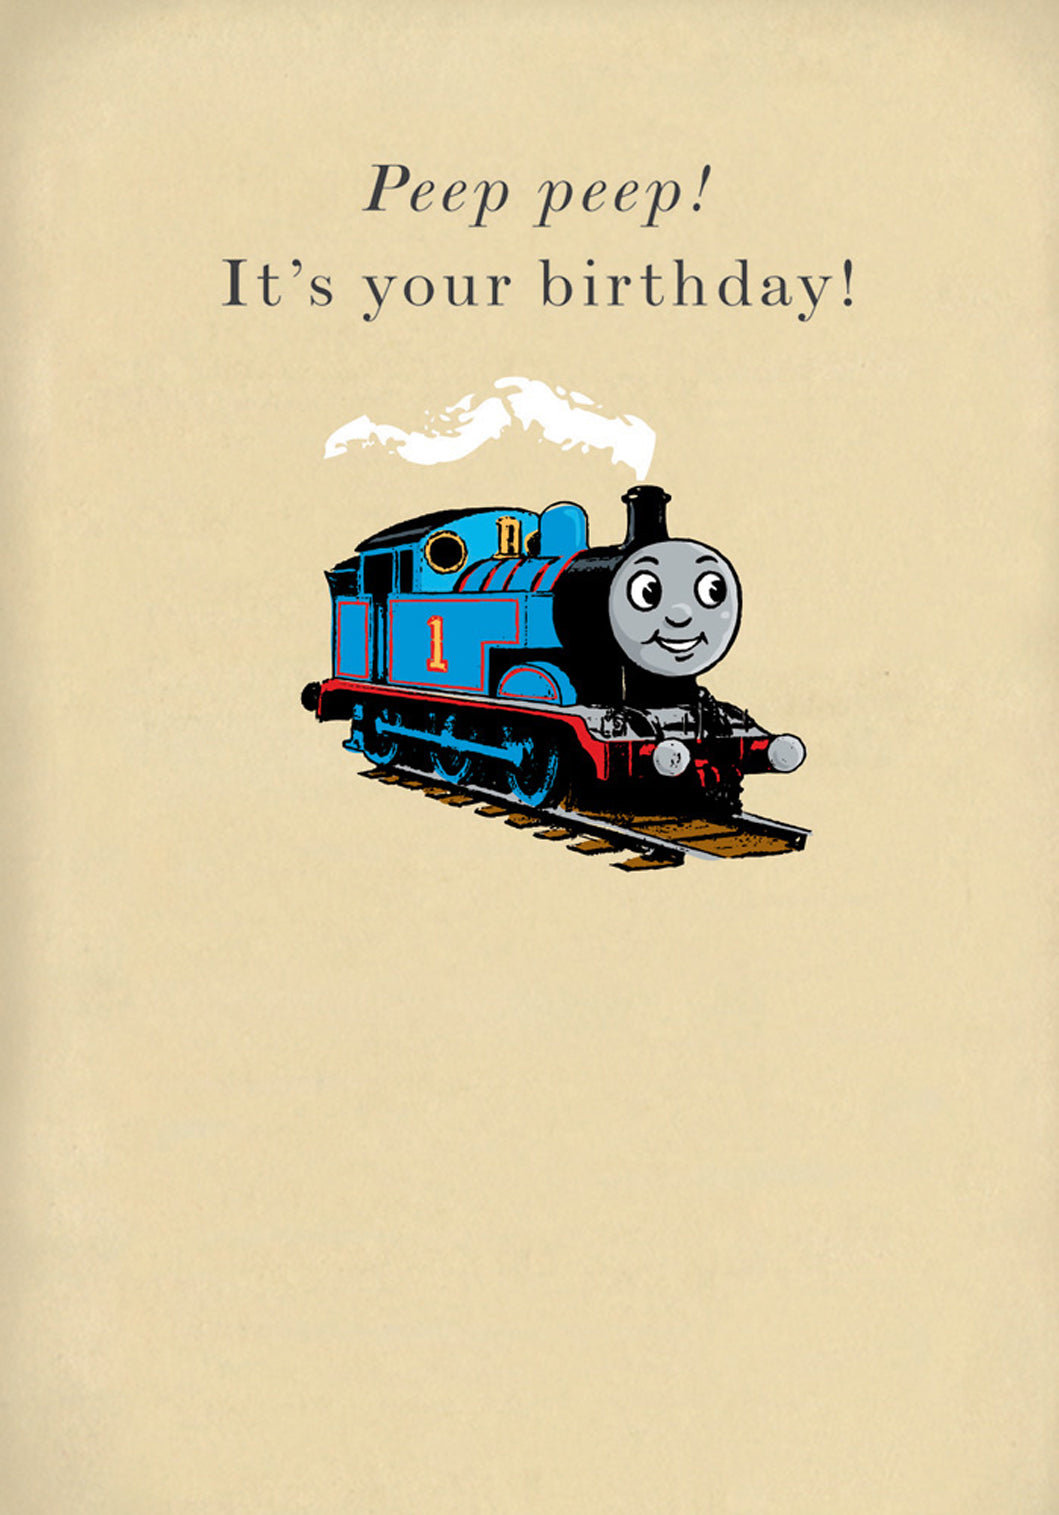 Thomas The Tank Engine Peep Peep Birthday Card